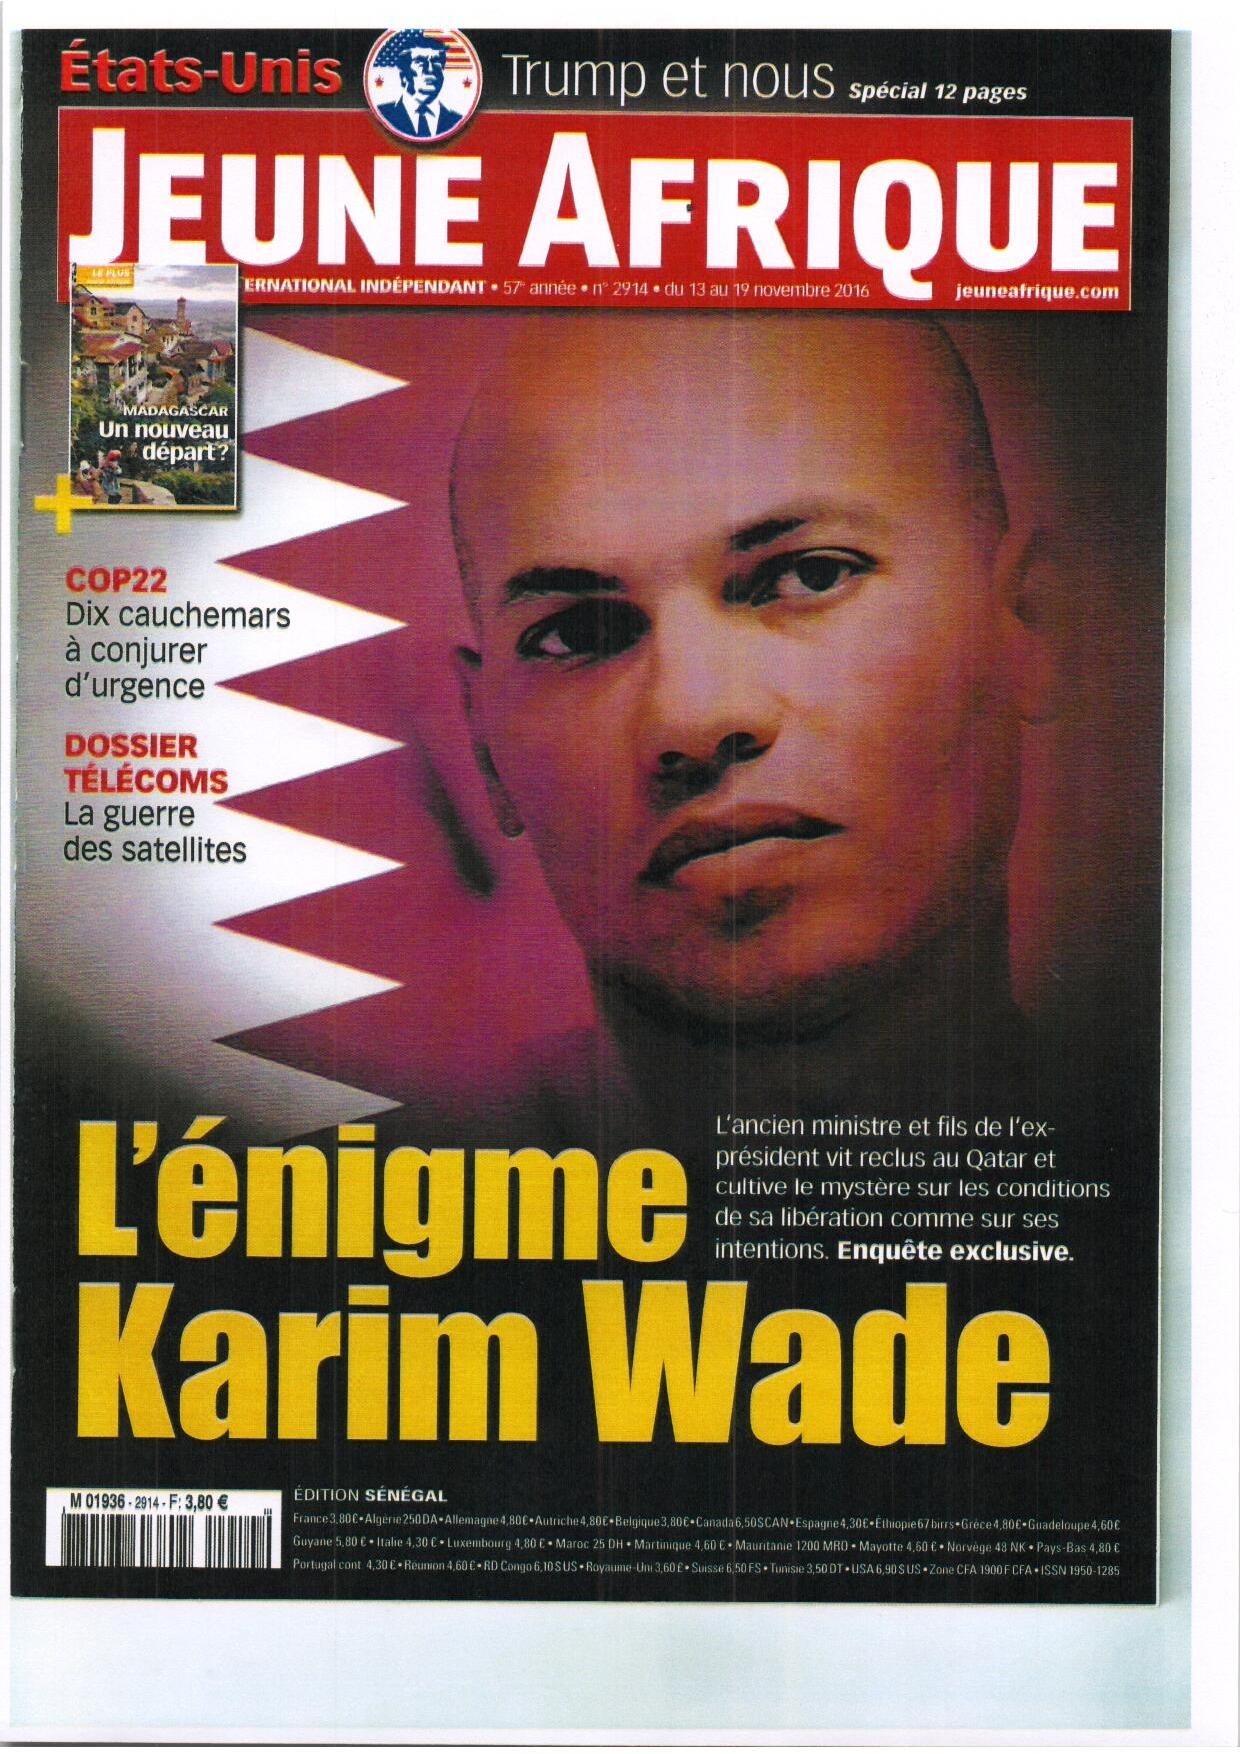 Comment Karim Wade a été libéré  le 24 juin dernier. qu'est ce qui s'est réellement passé?